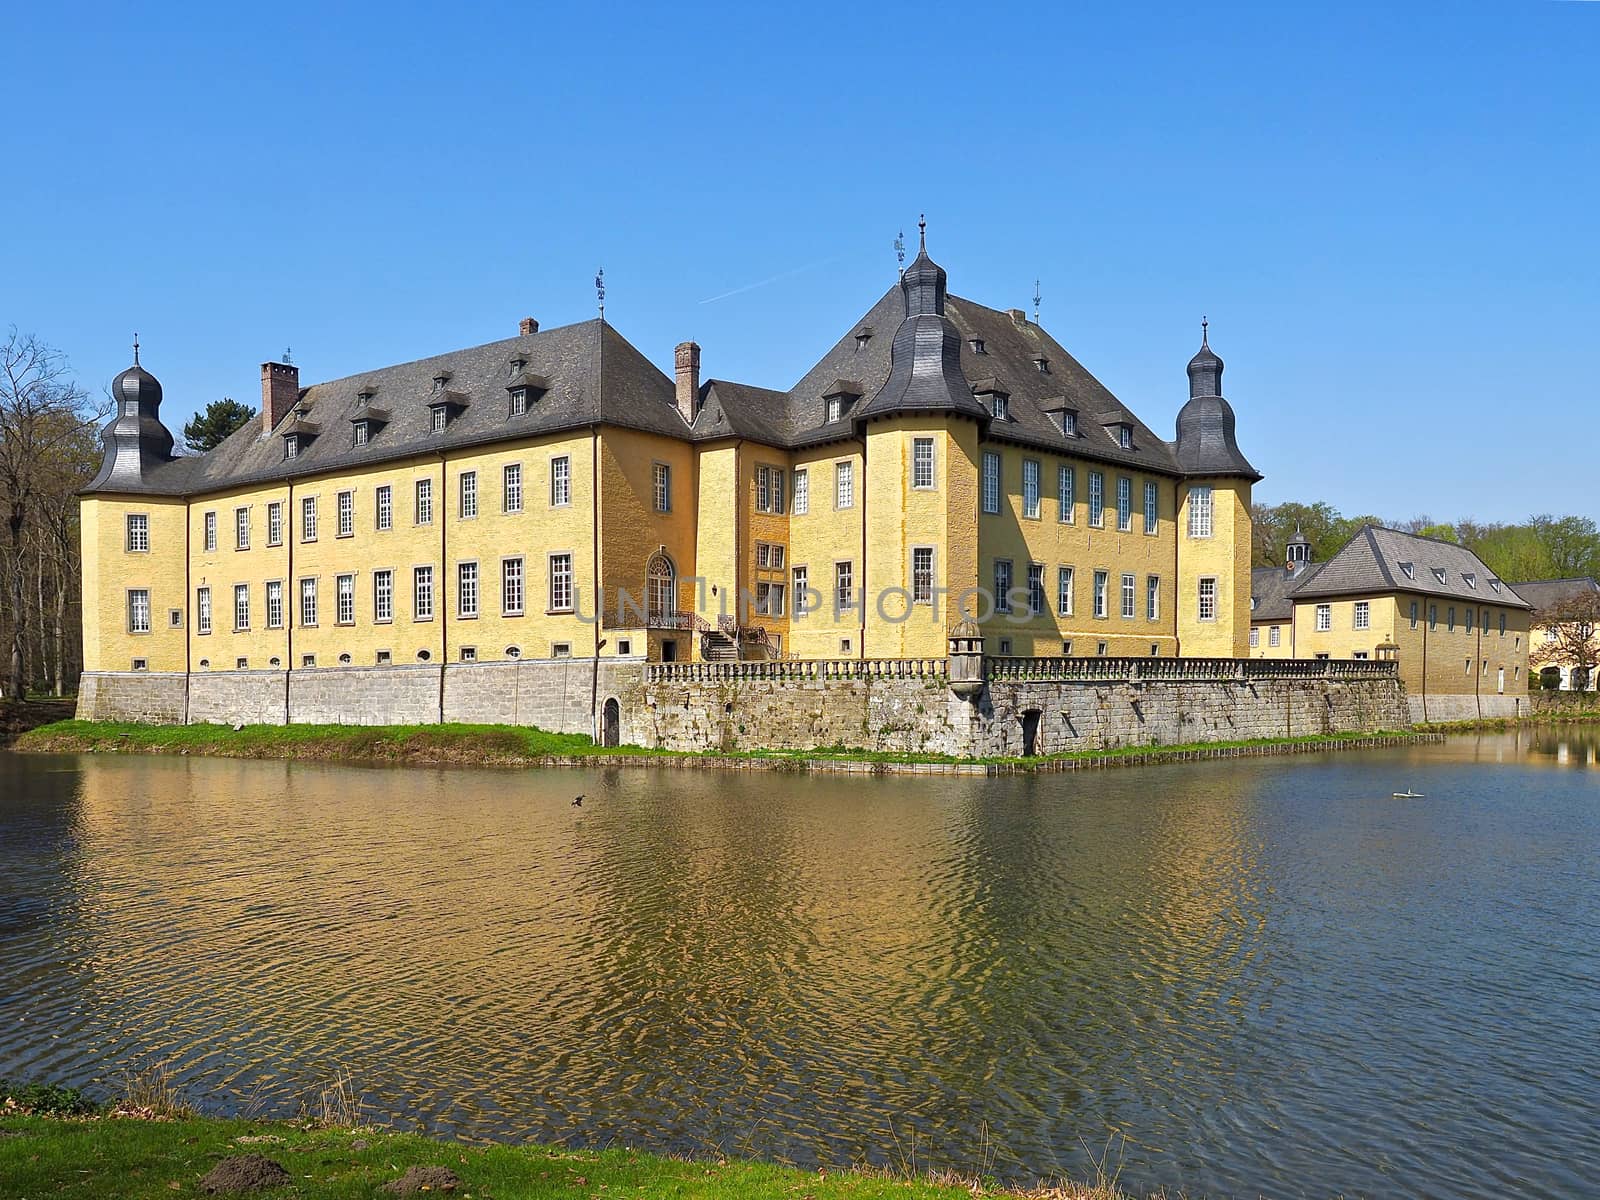 Castle of Schloss Dck in Juechen in spring by Stimmungsbilder